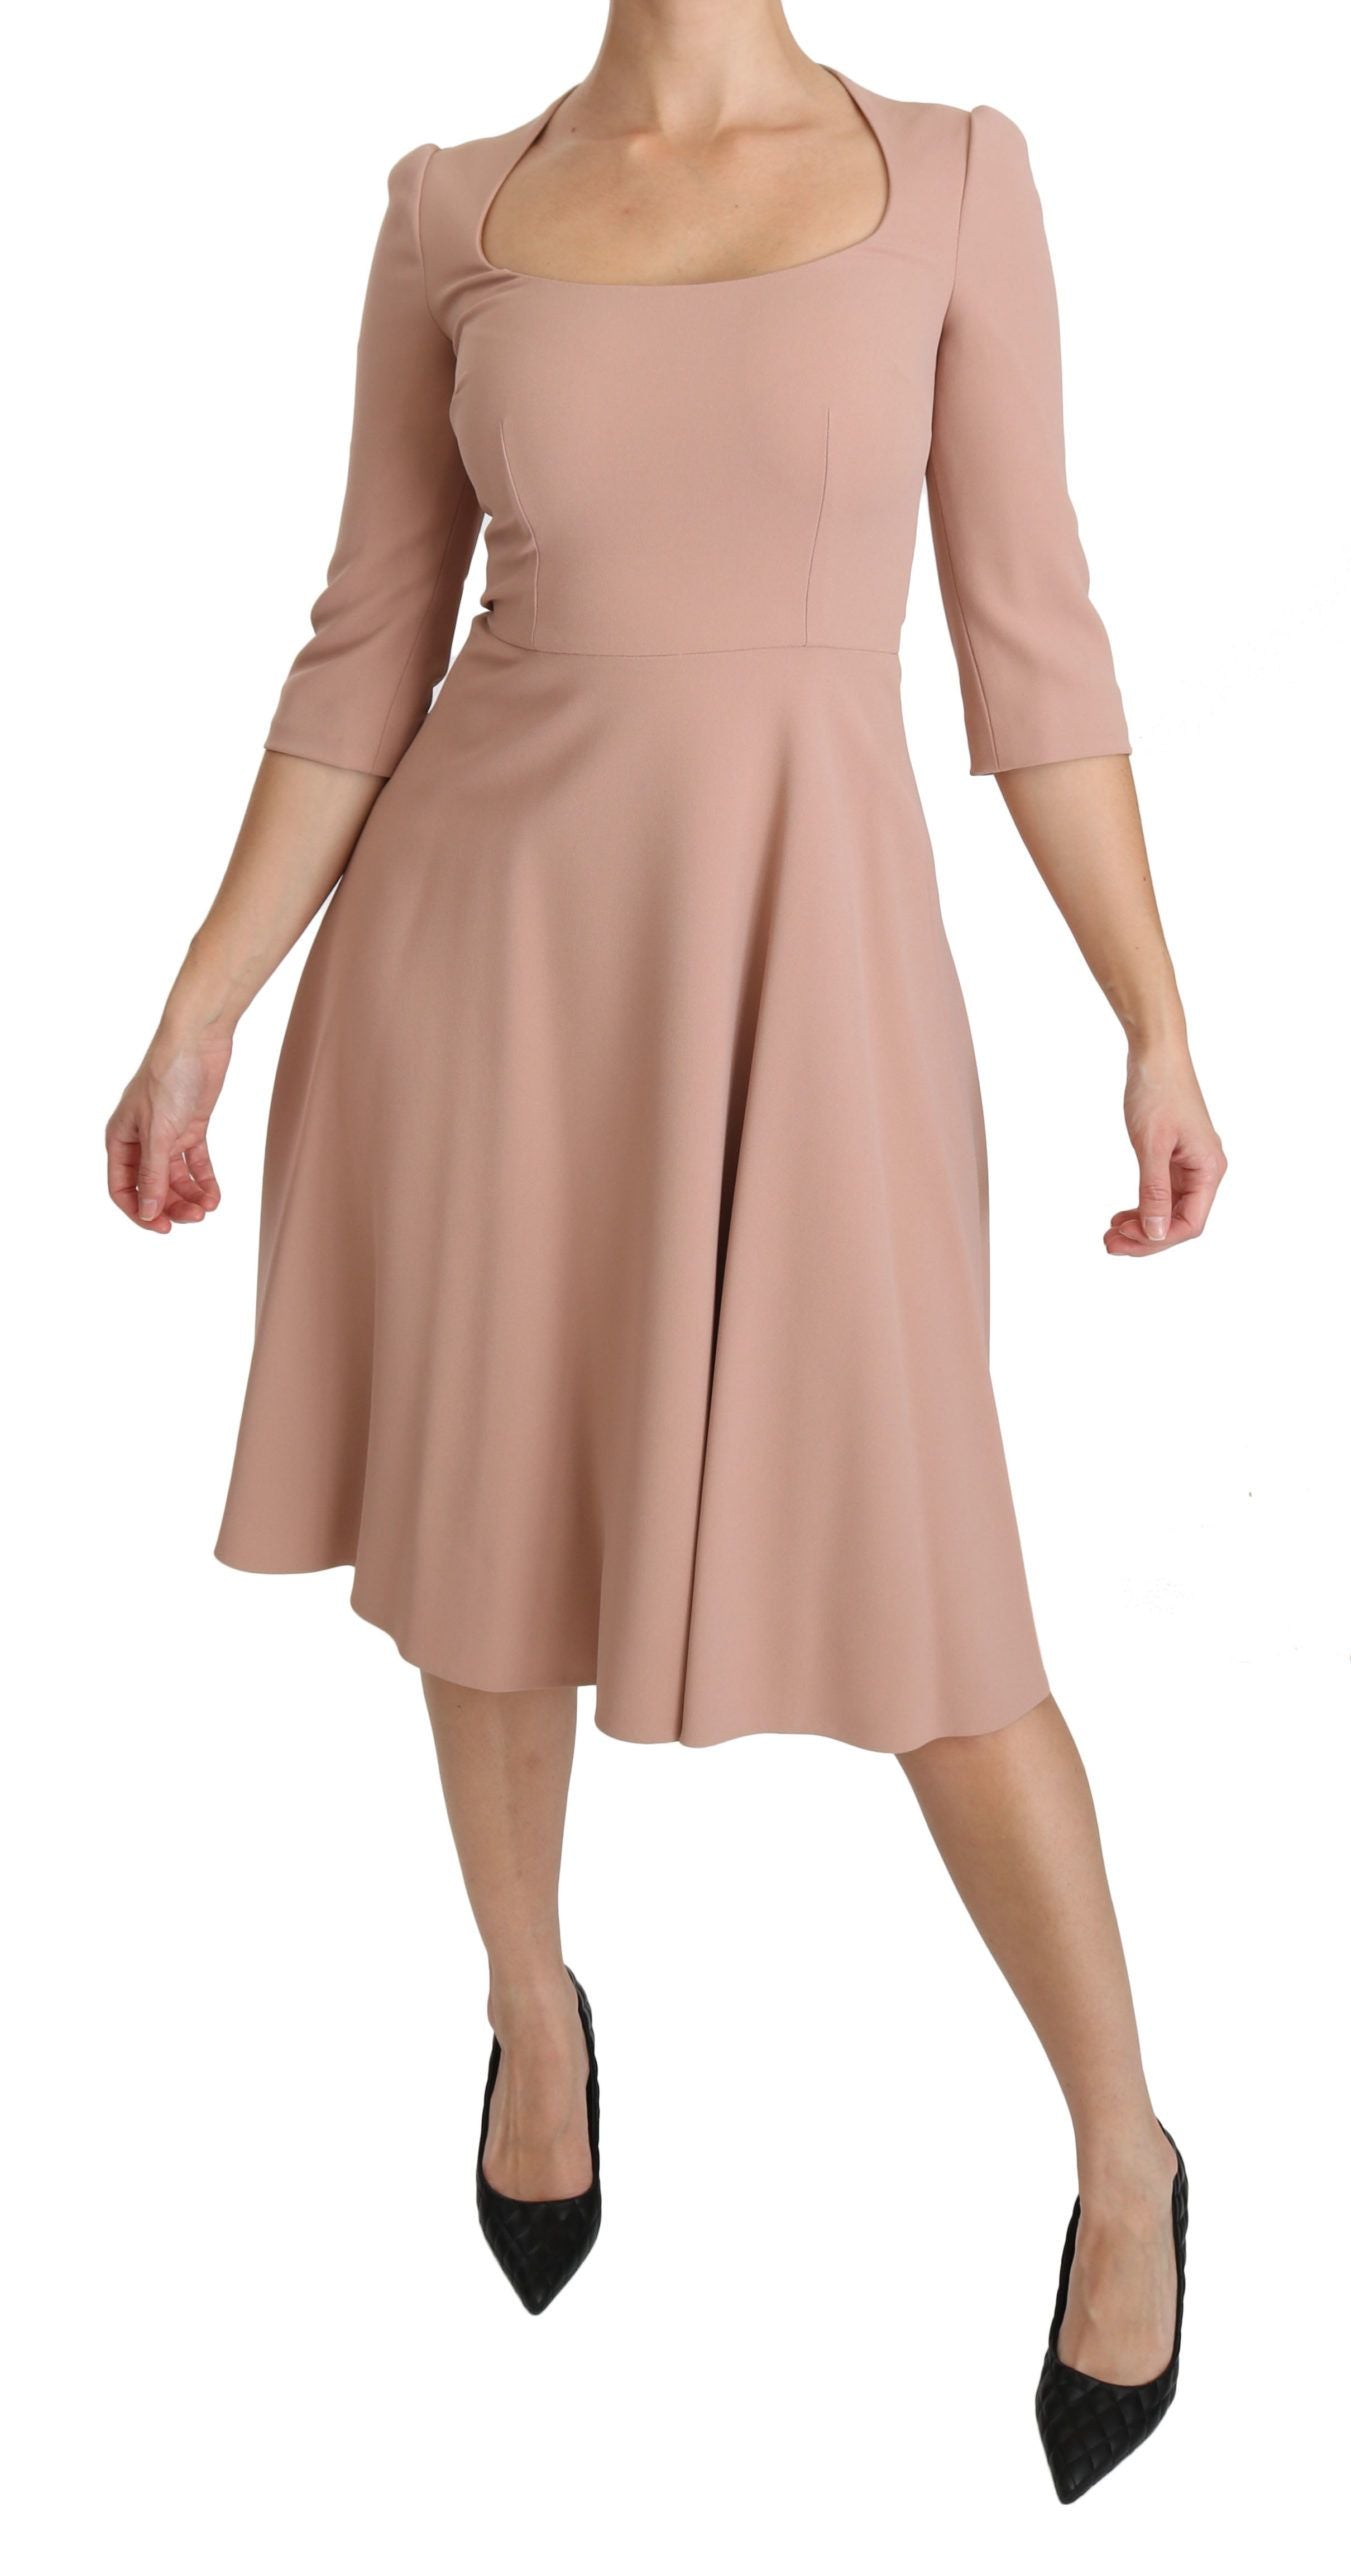 Elegant Light Pink A-Line Knee Length Dress